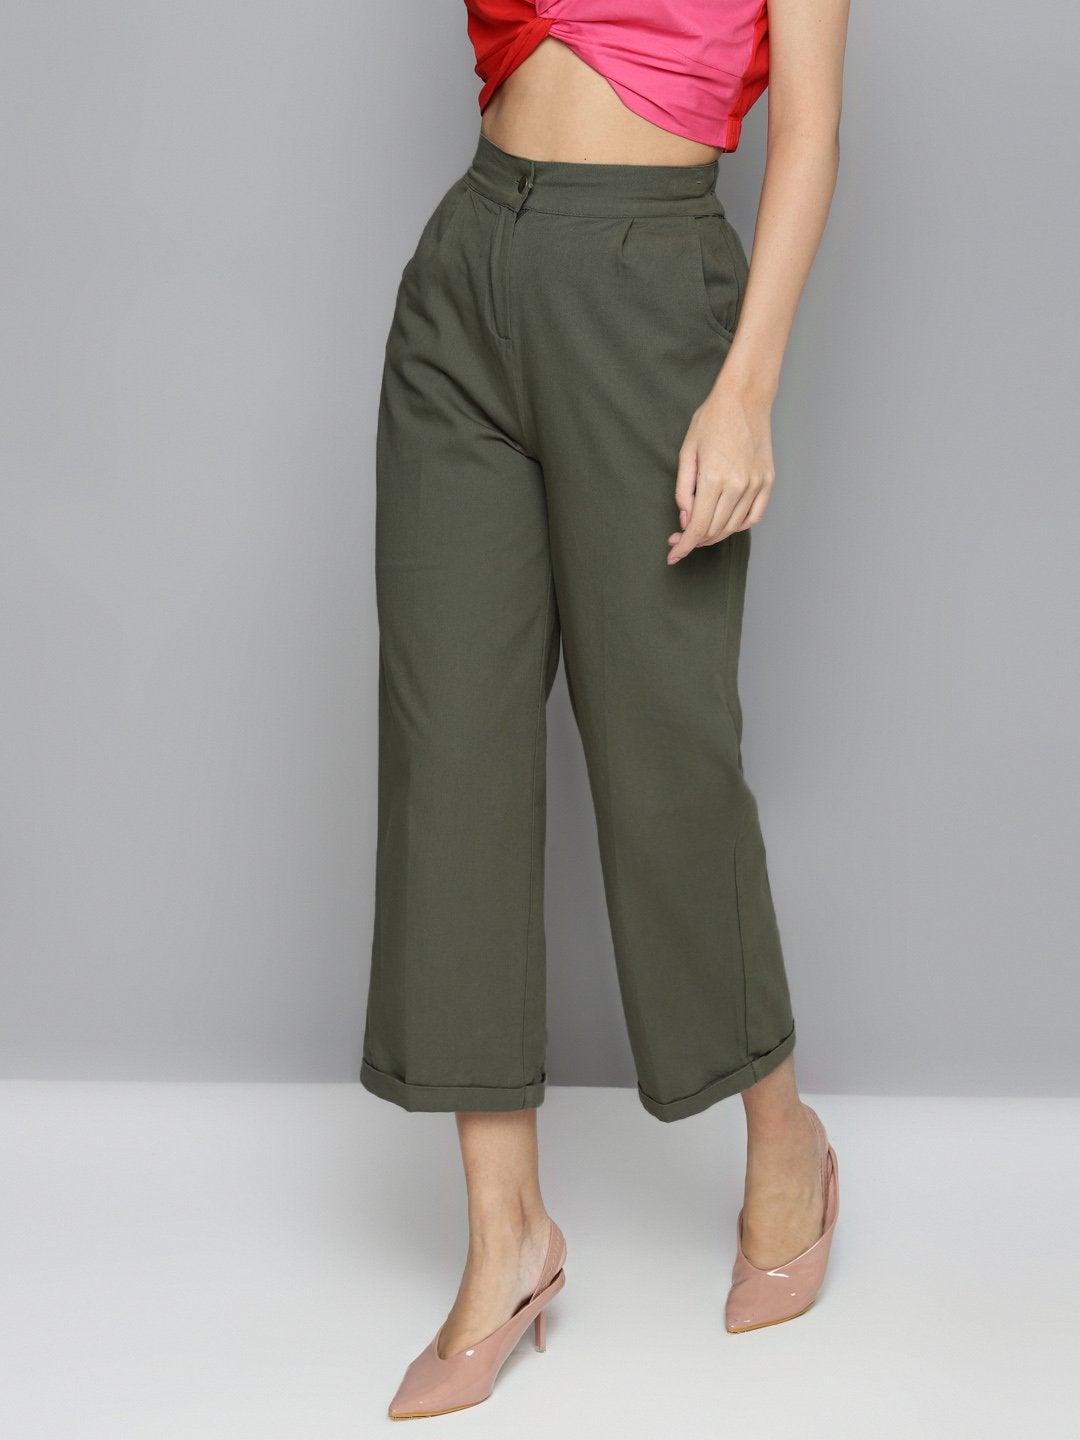 Women's Olive Twill Straight Pants - SASSAFRAS